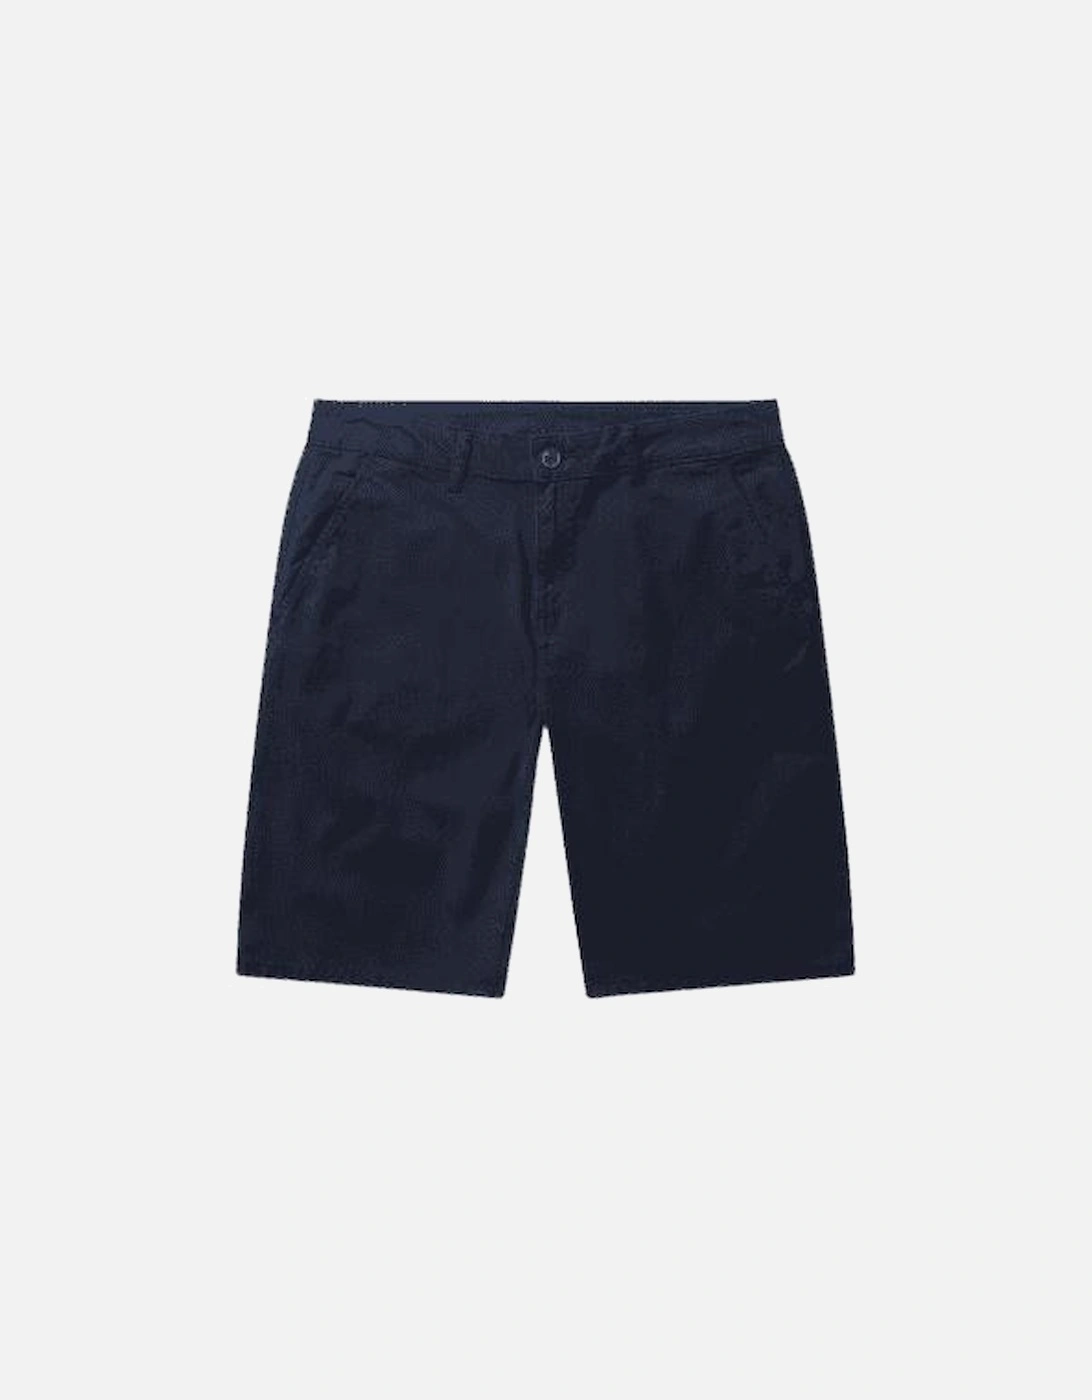 Gradini Navy Chino Shorts, 4 of 3